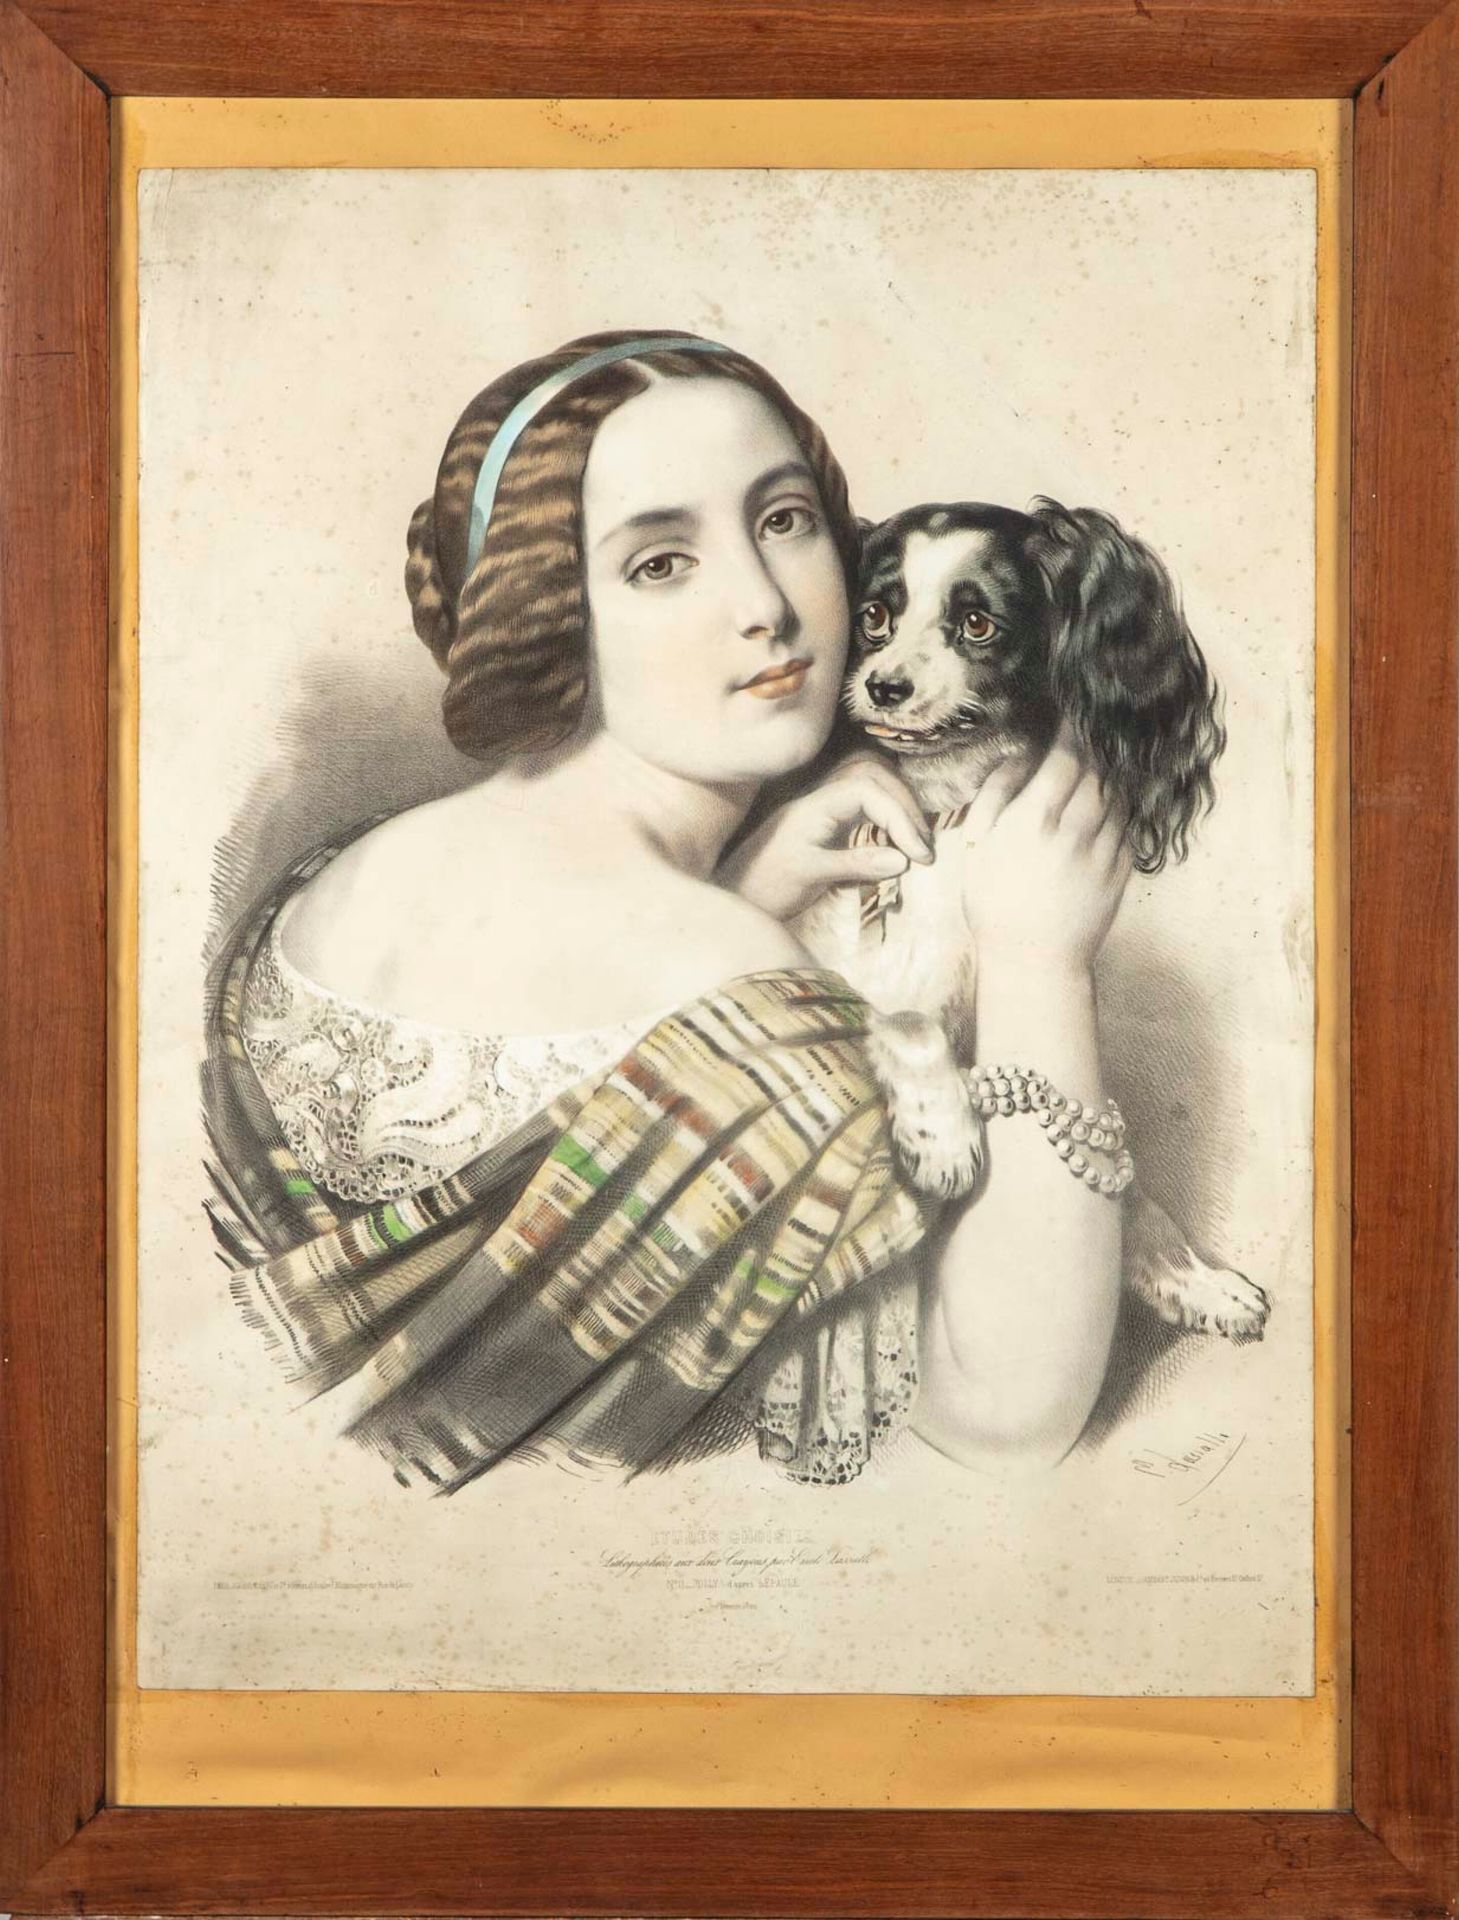 LEPAULE Nach Lépaule, gestochen von Emile Lassalle

Jolly, Porträt einer Frau mi&hellip;